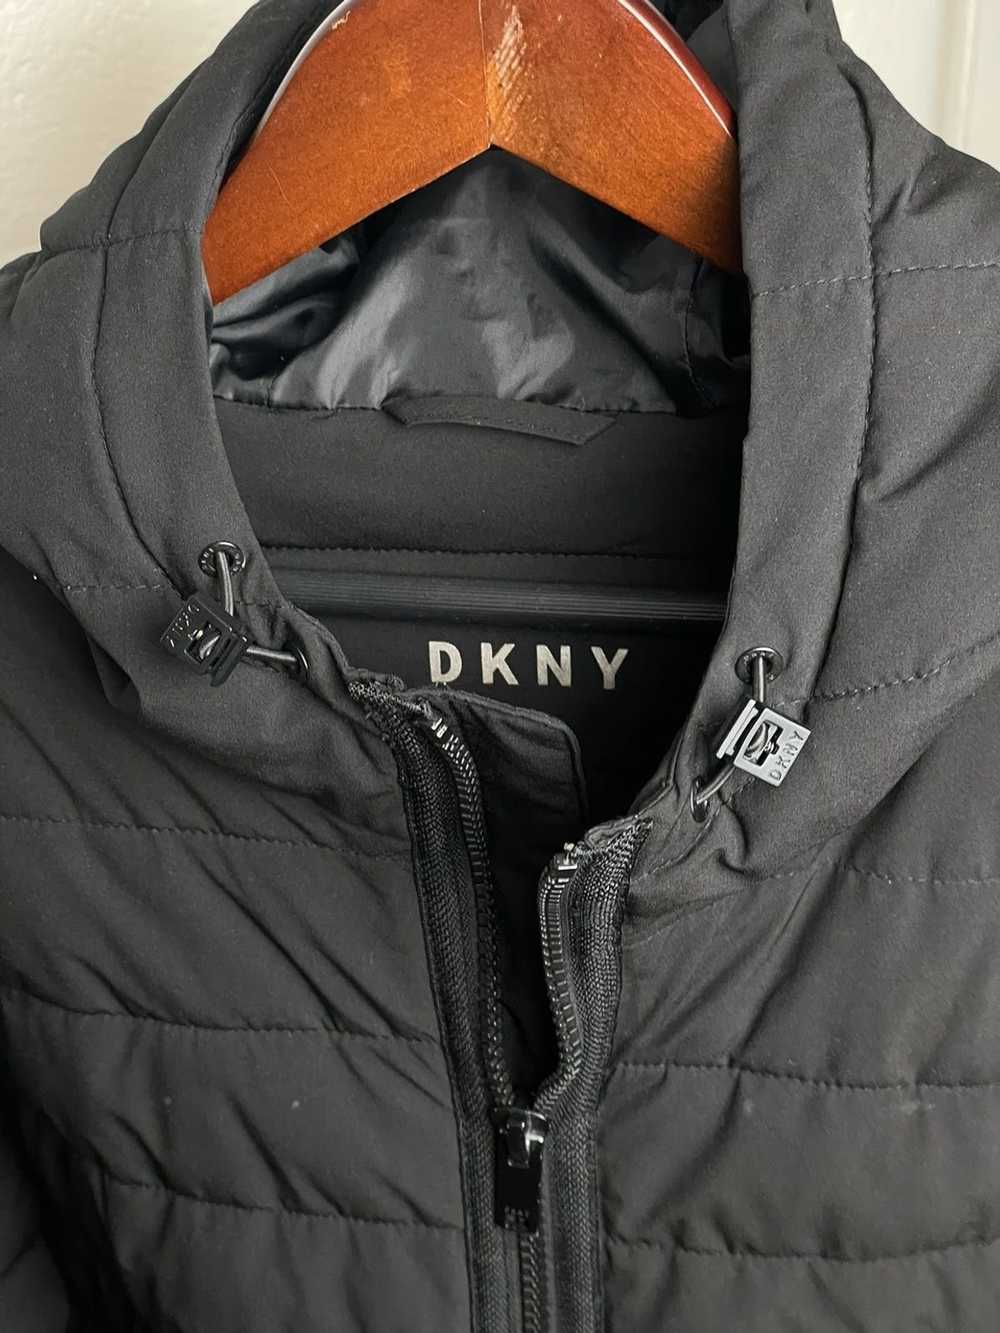 DKNY DKNY Puffer Hooded Jacket - image 2